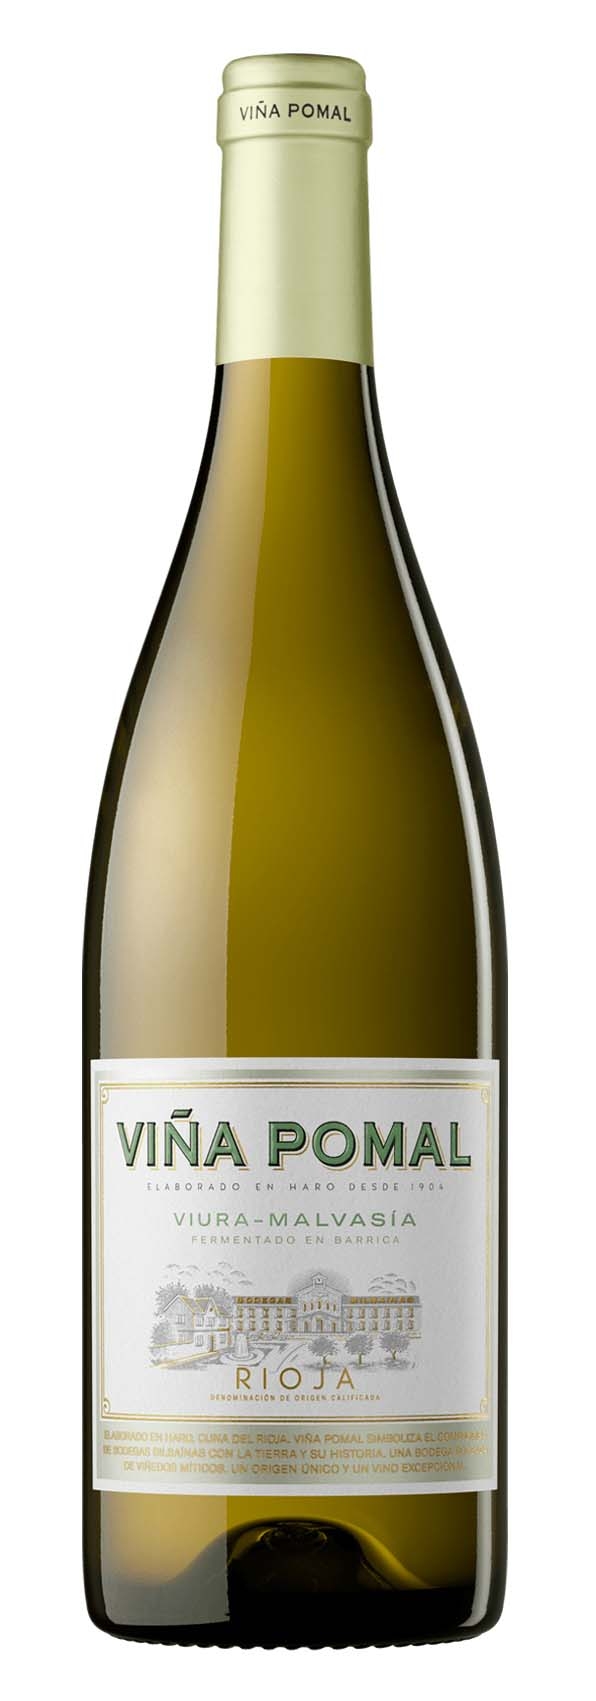 Vino Blanco Viña Pomal 2017